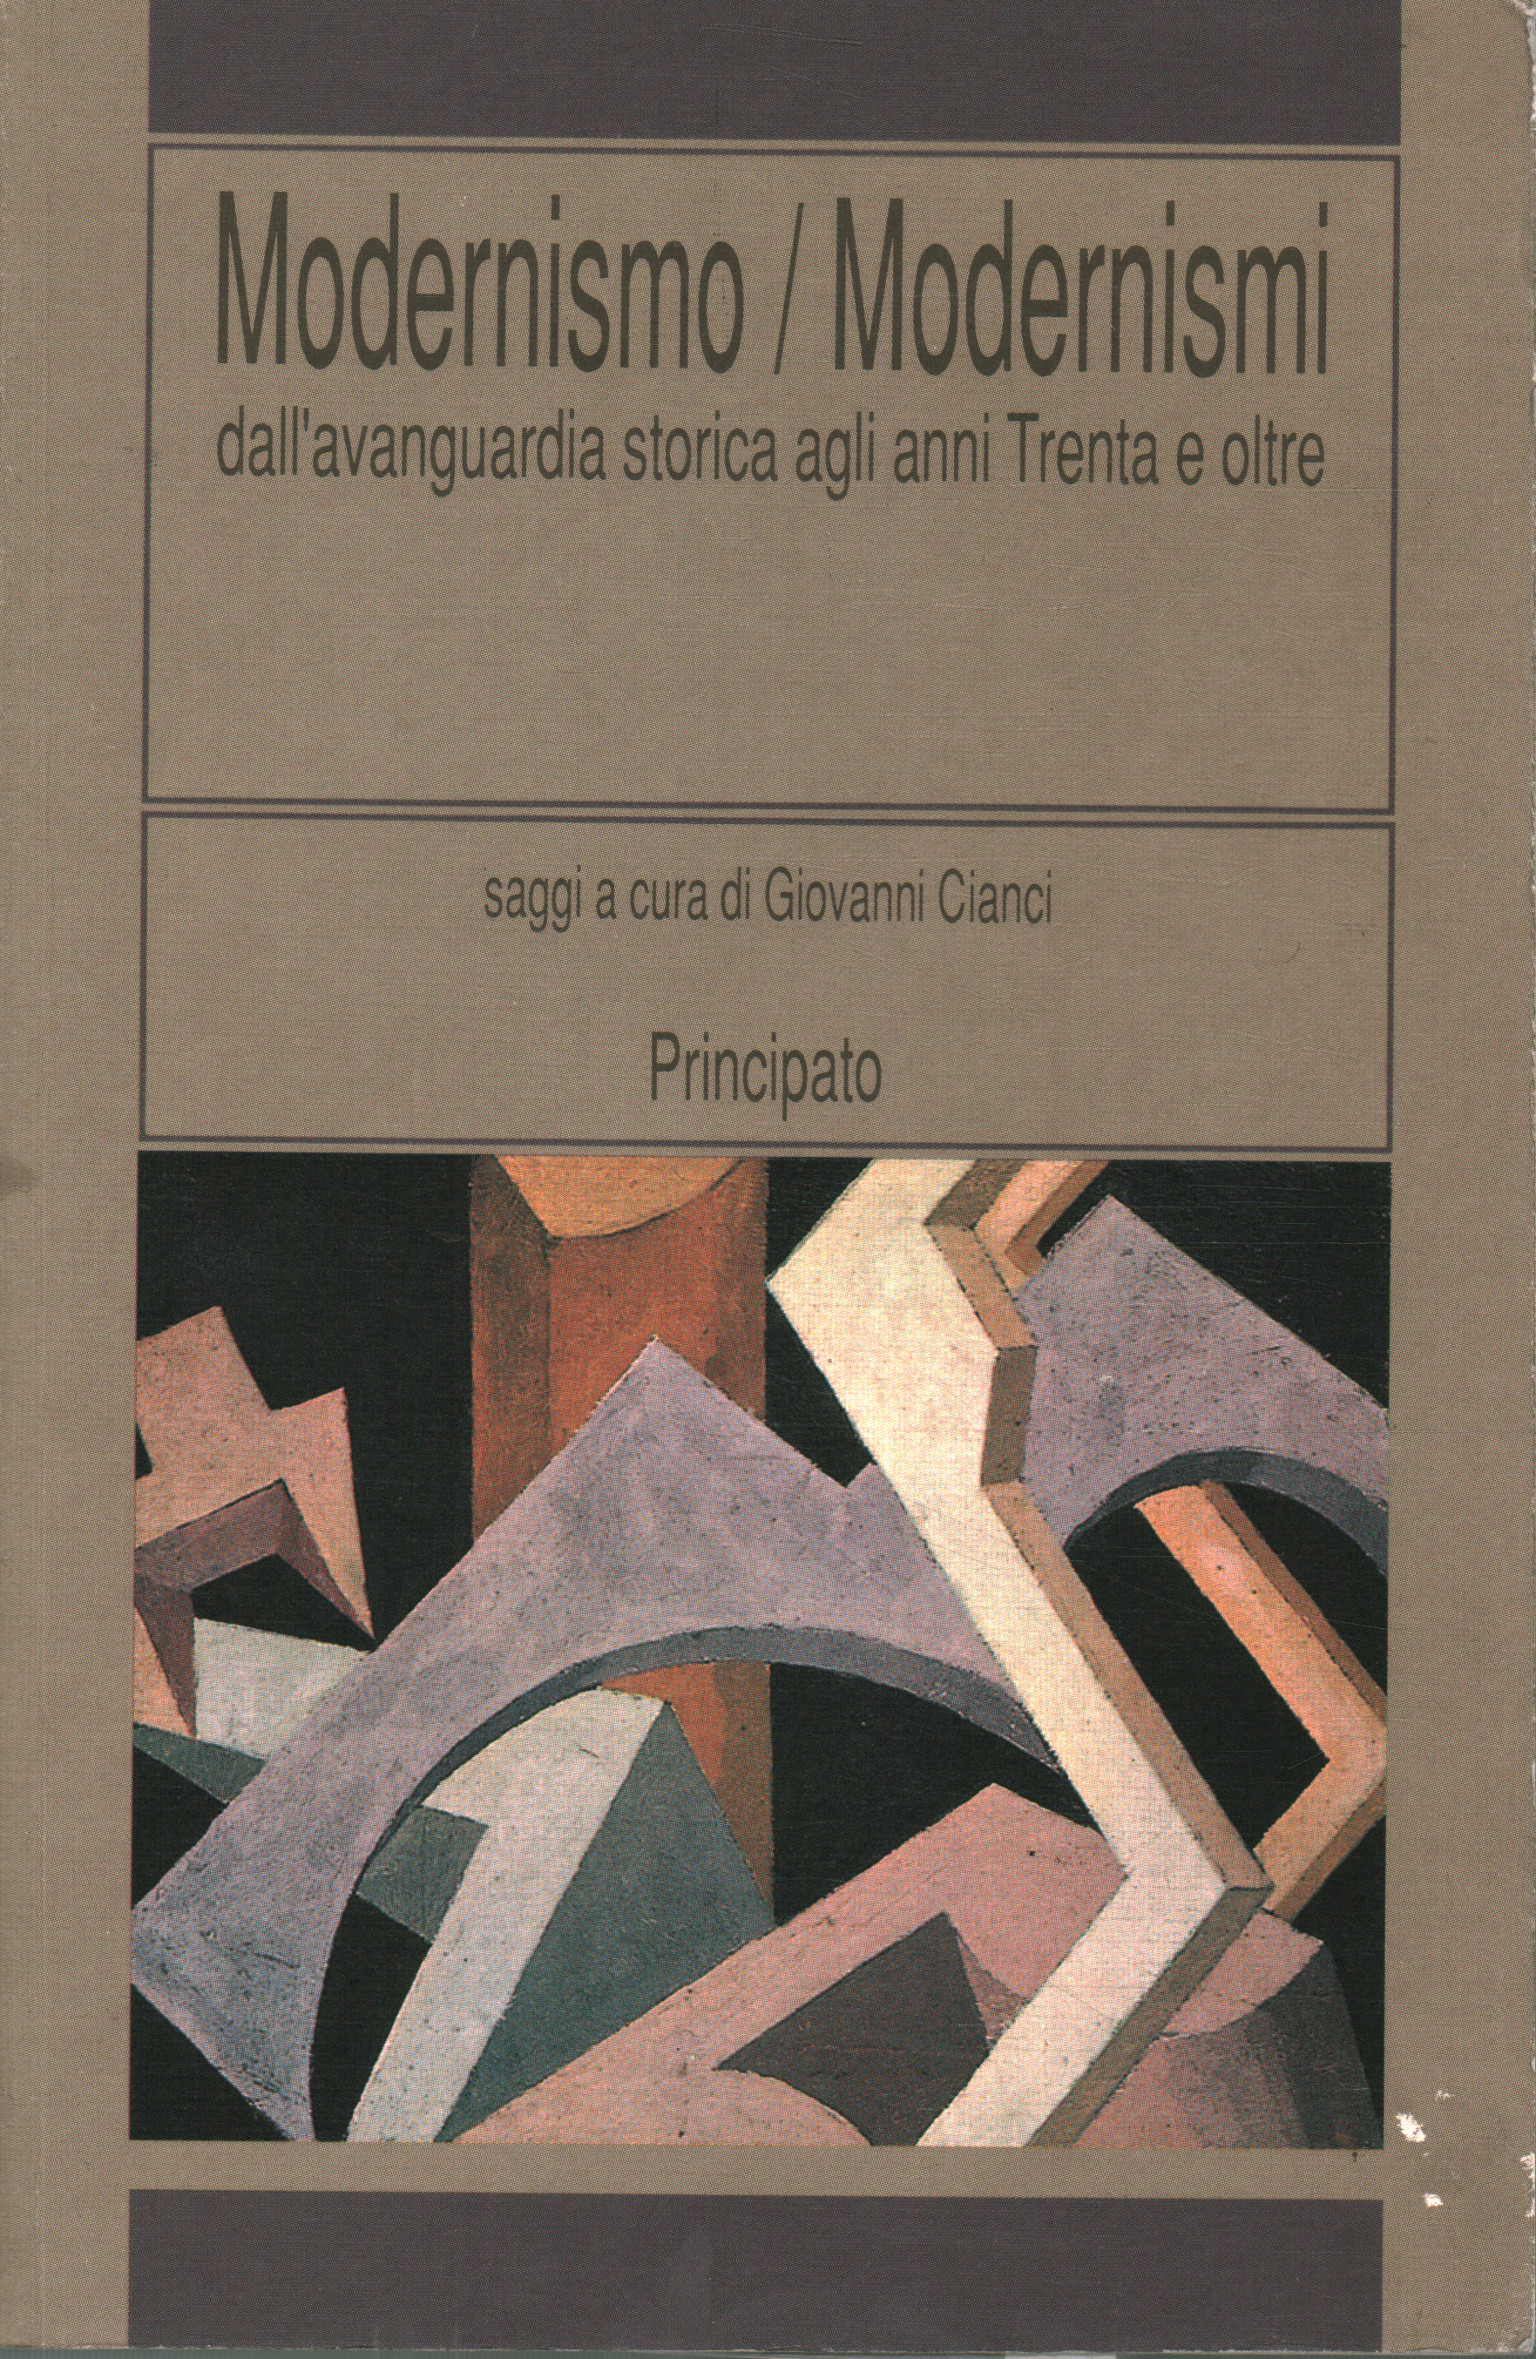 Modernismo / Modernismo, Giovanni Cianci